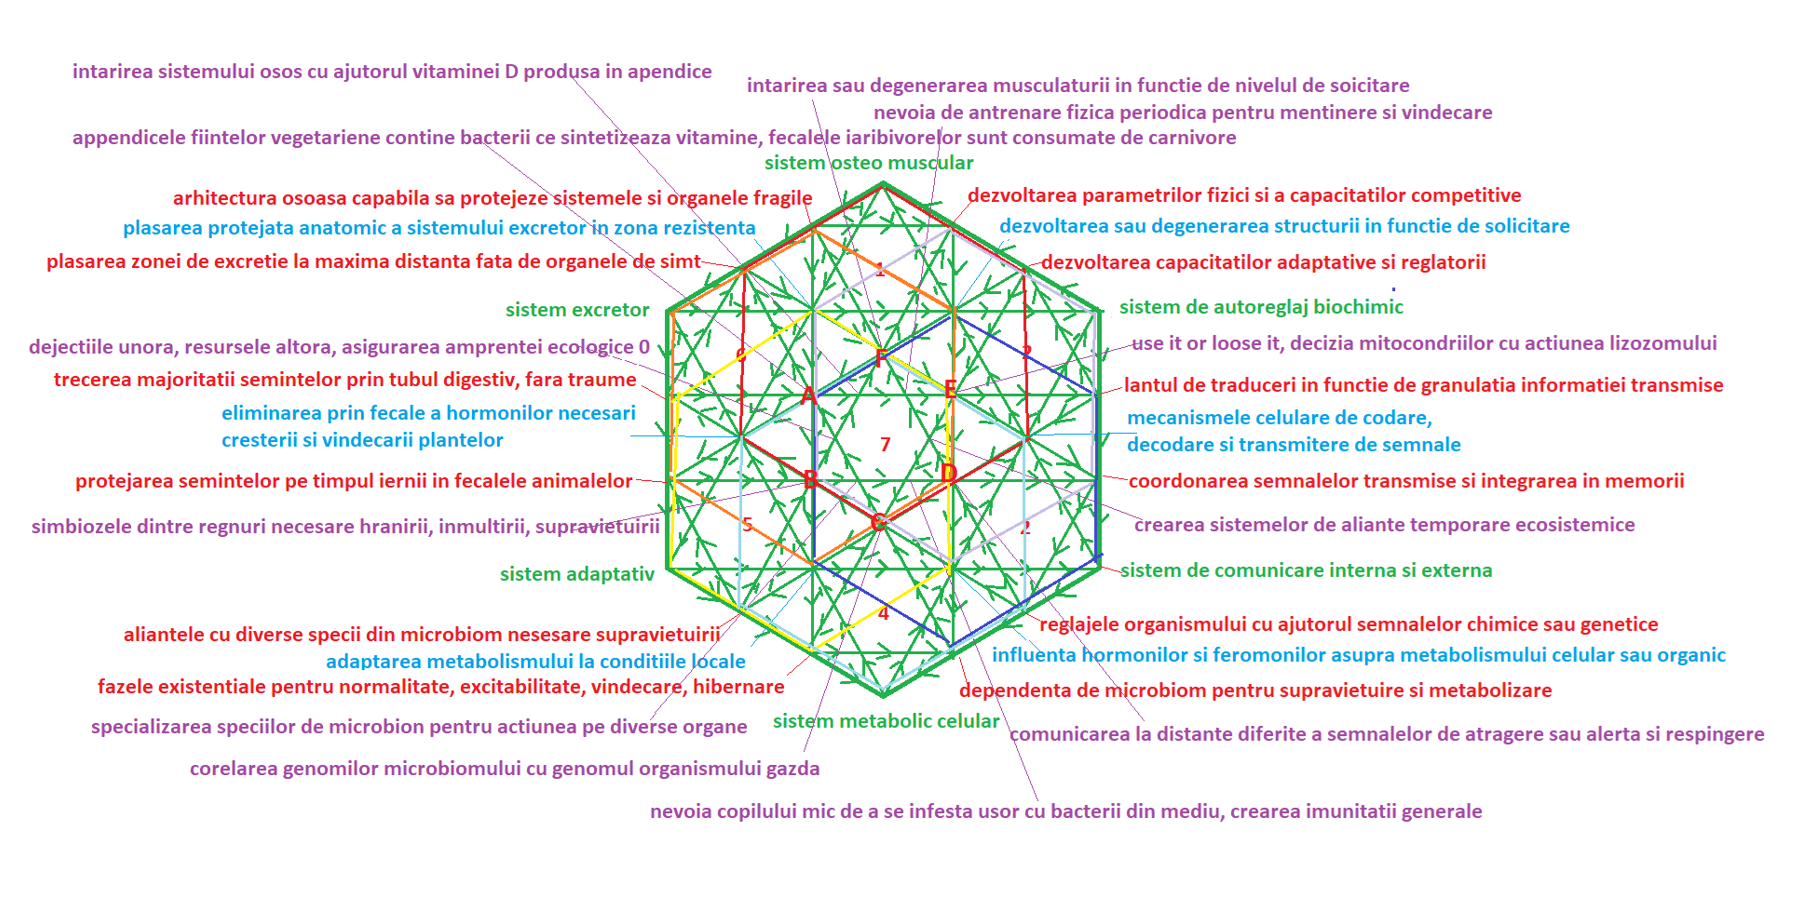 Hexagonul verde